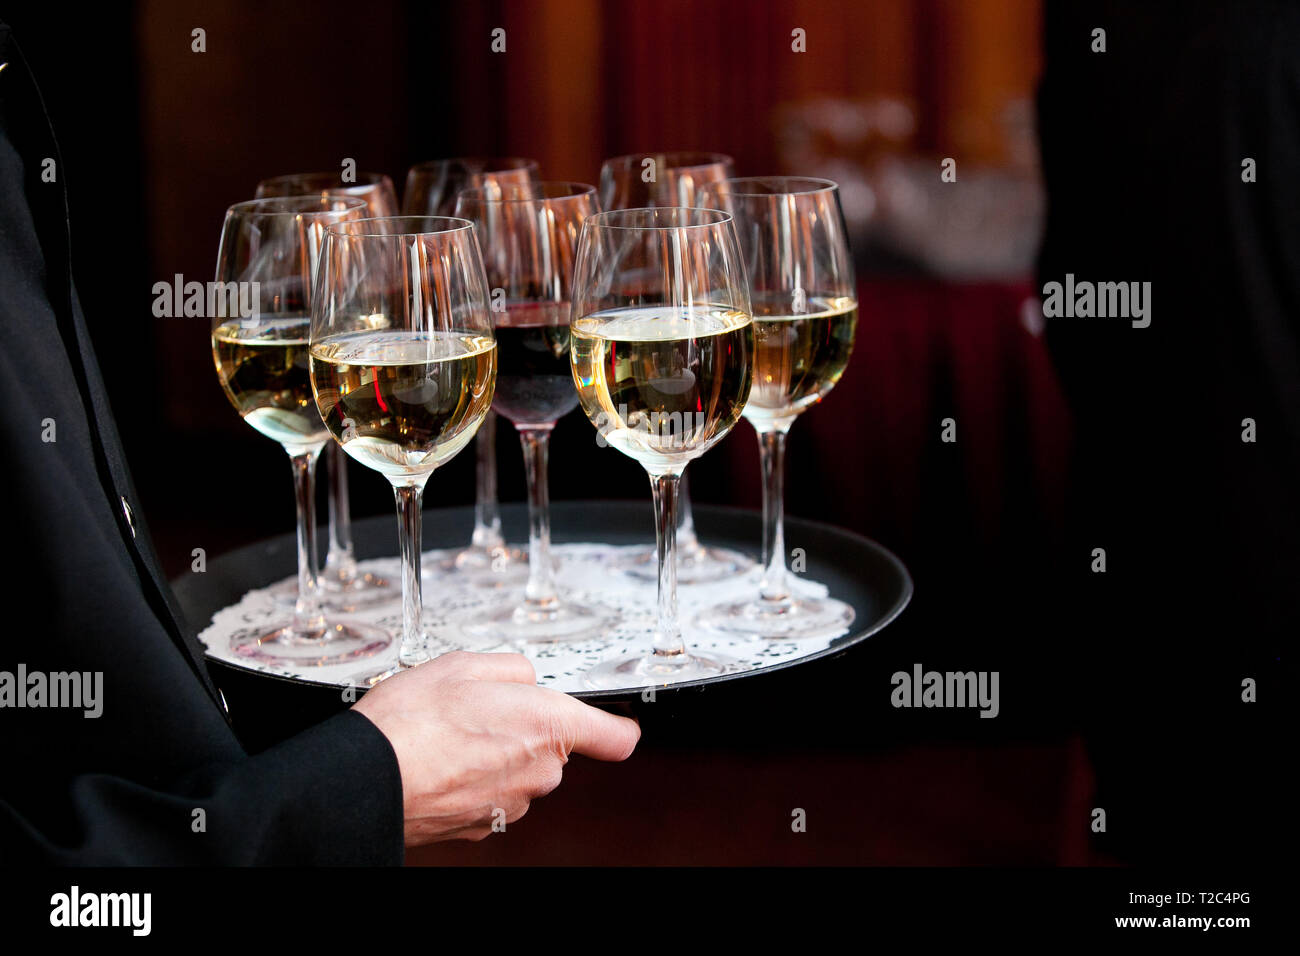 Ein Kellner mit einem Tablett voller Getränke während ein gebotenes  Hochzeit oder andere besondere Veranstaltung Stockfotografie - Alamy